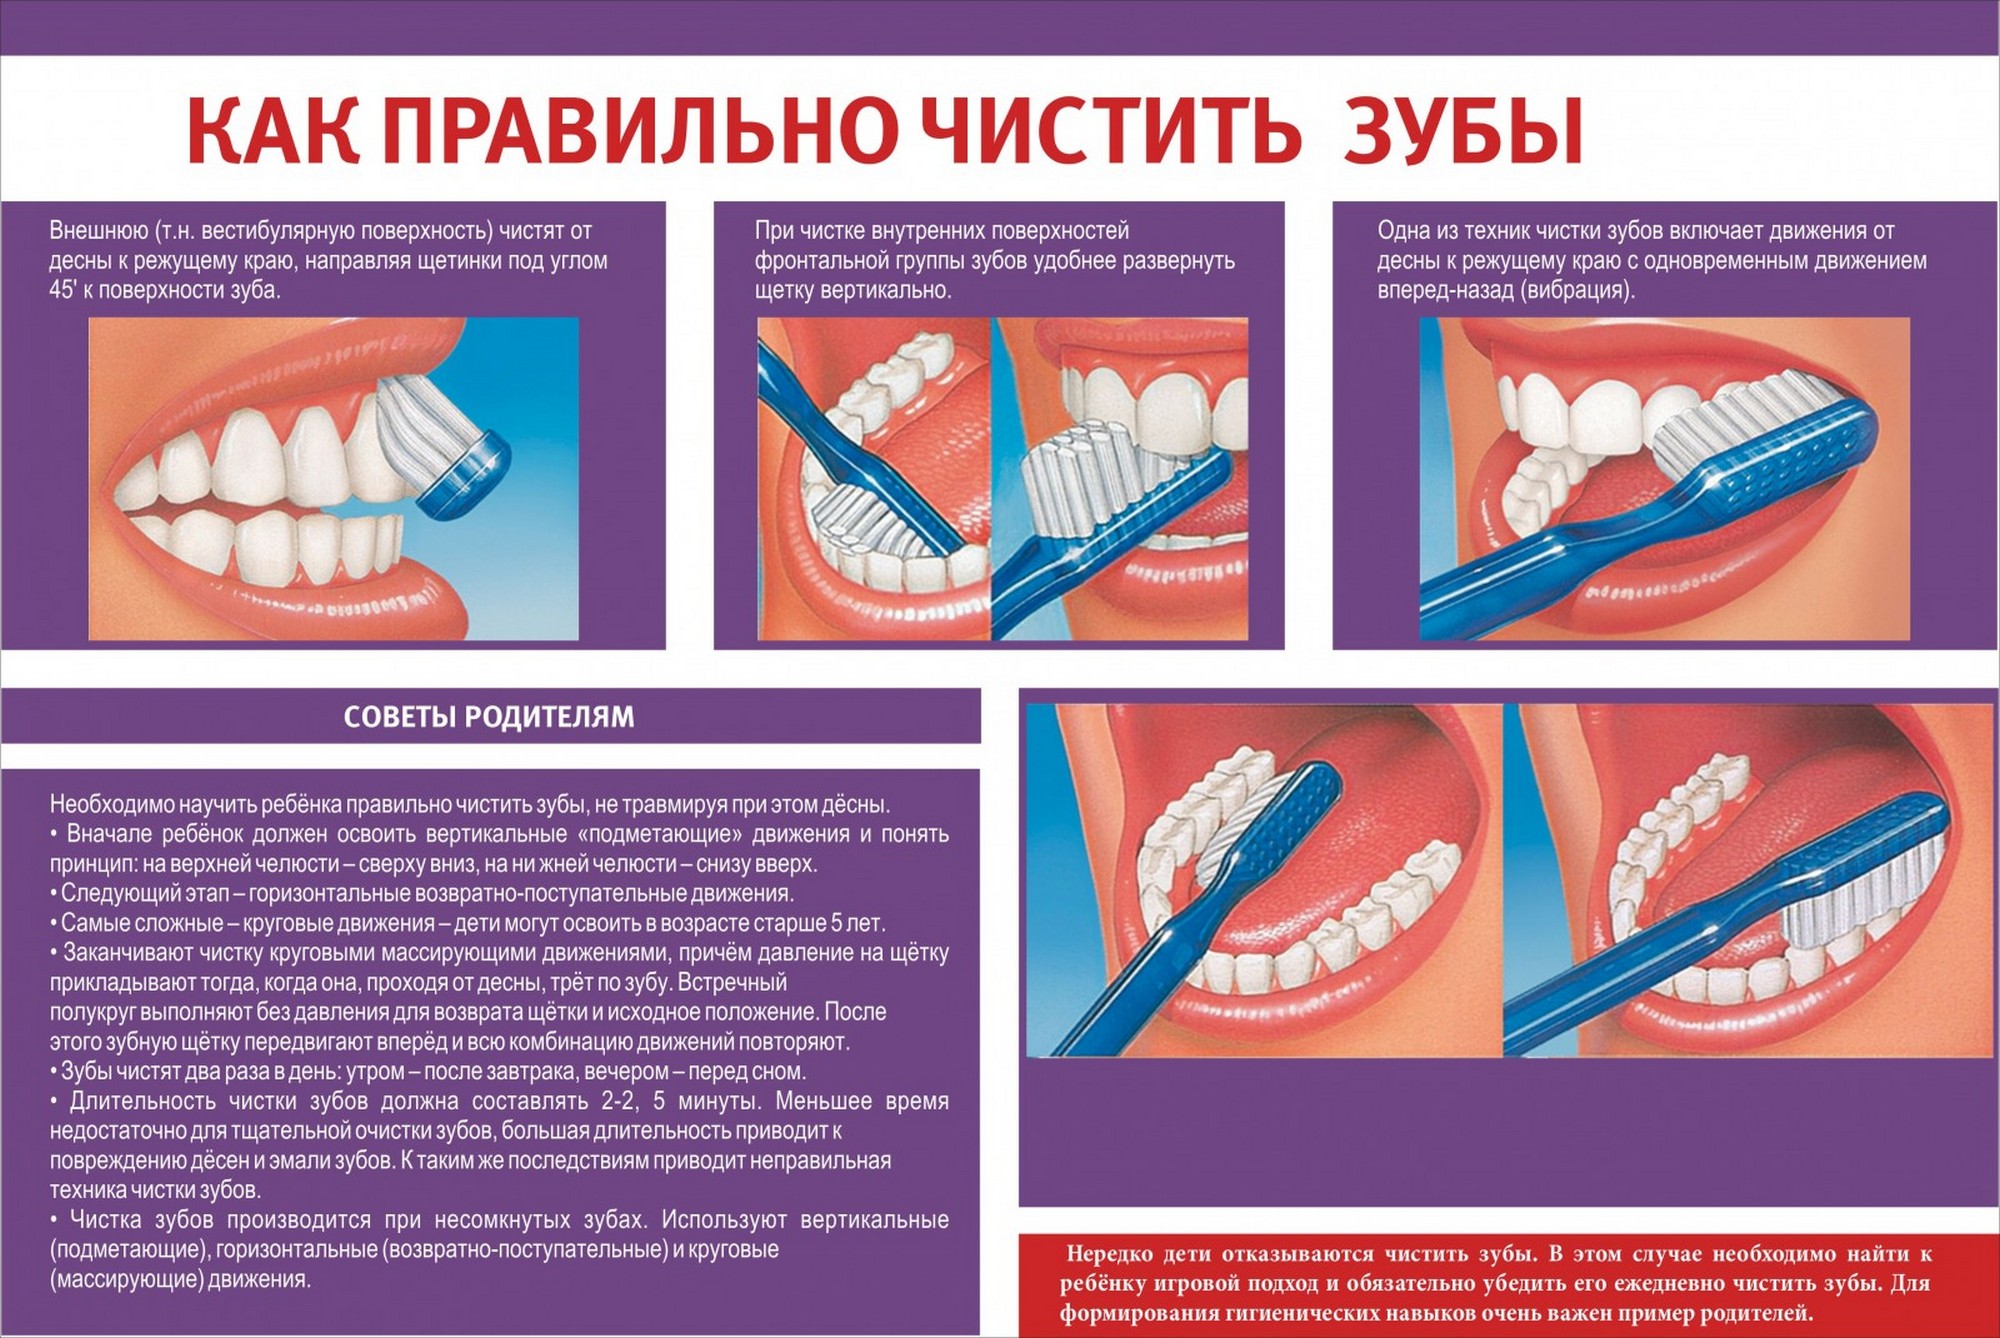 Чистка зубов казань акции. Как правильно чистить зубы. Памятка чистки зубов. Стенд стоматология. Памятка о правильной чистке зубов.